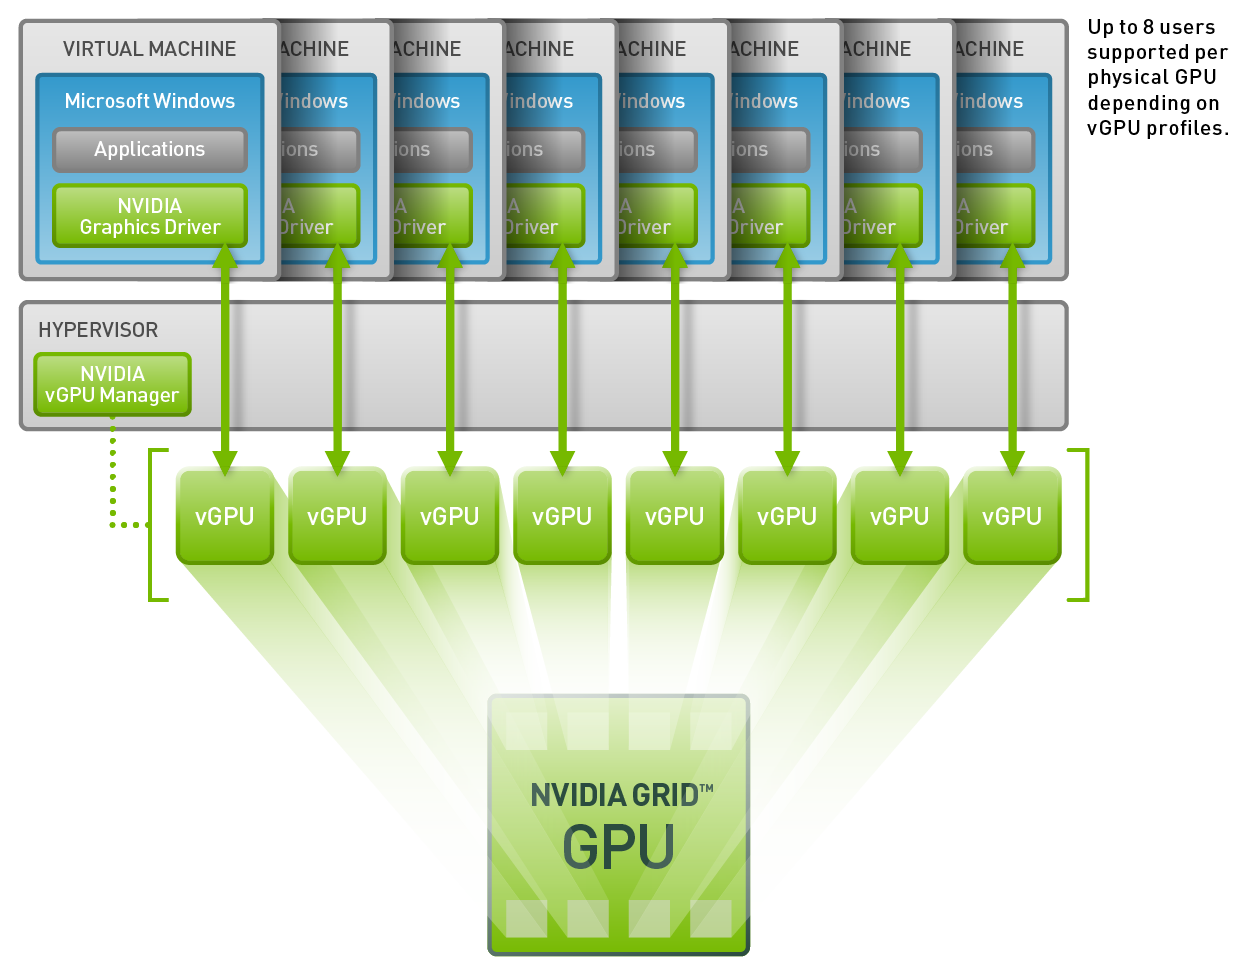 NVIDIA виртуальная машина. NVIDIA Grid GPU. Виртуализация процессора. Nvidia grid